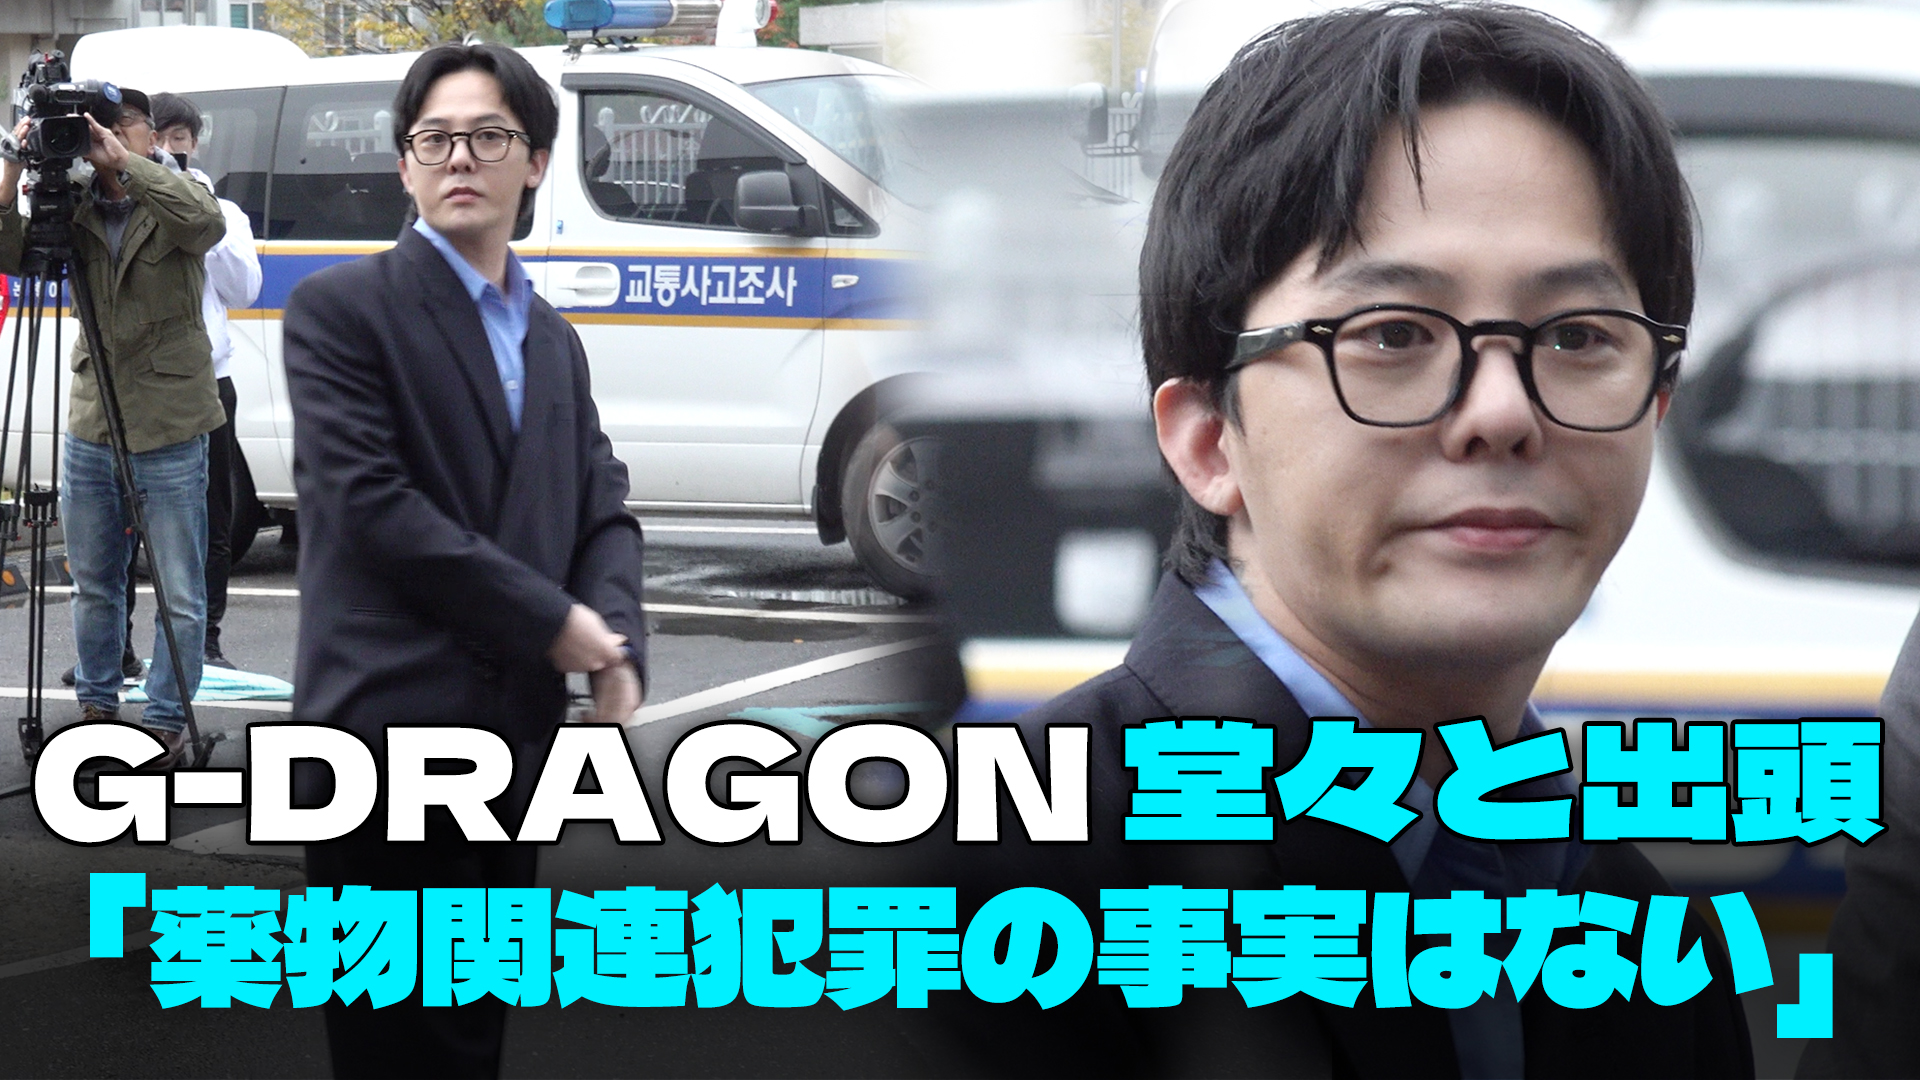 【動画】G-DRAGON、堂々と出頭…試薬検査を前に余裕の表情